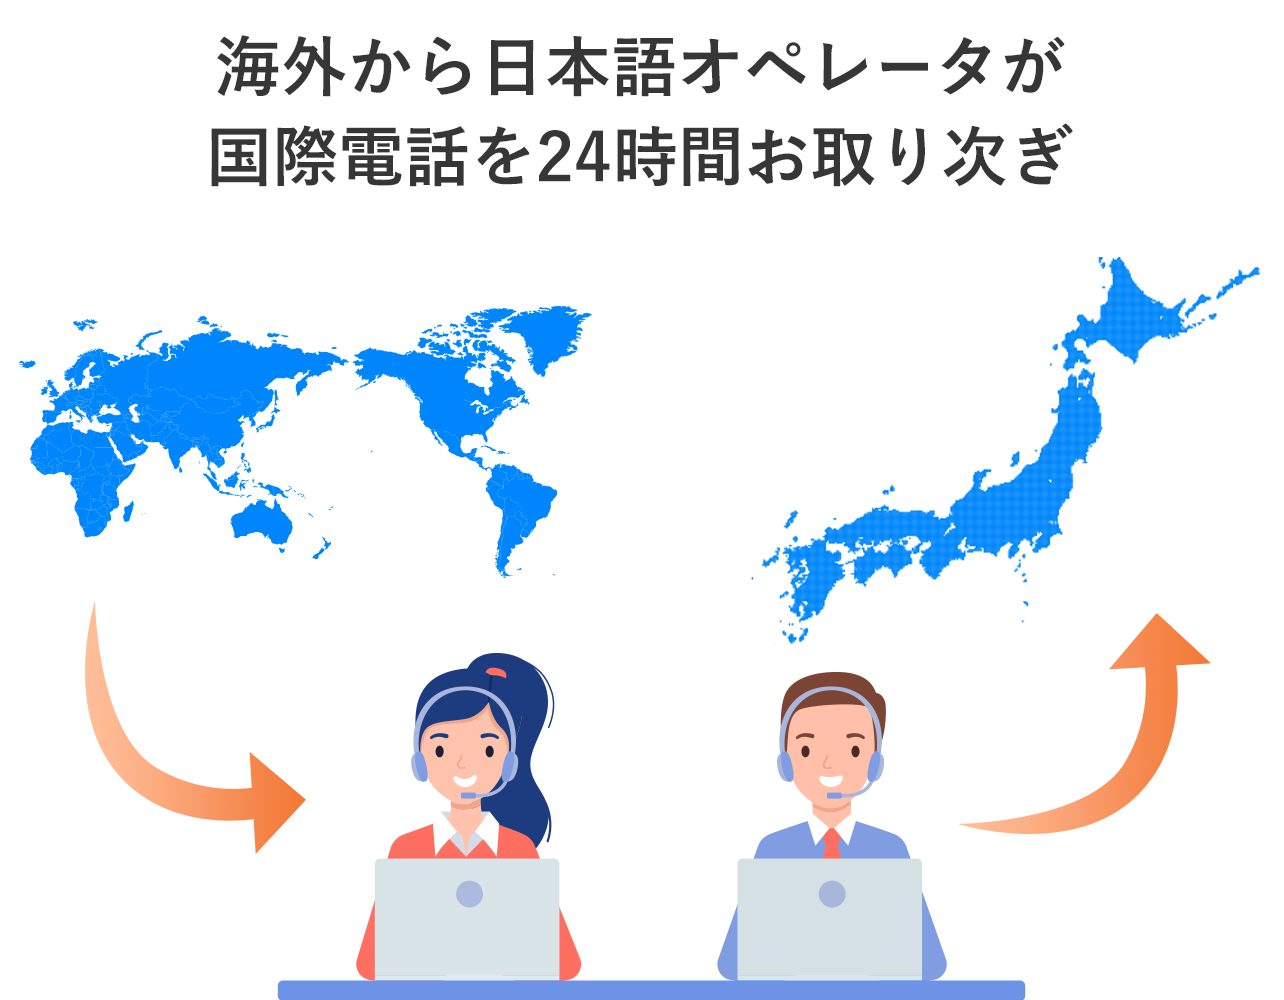 海外から日本語オペレータが国際電話を24時間お取り次ぎ